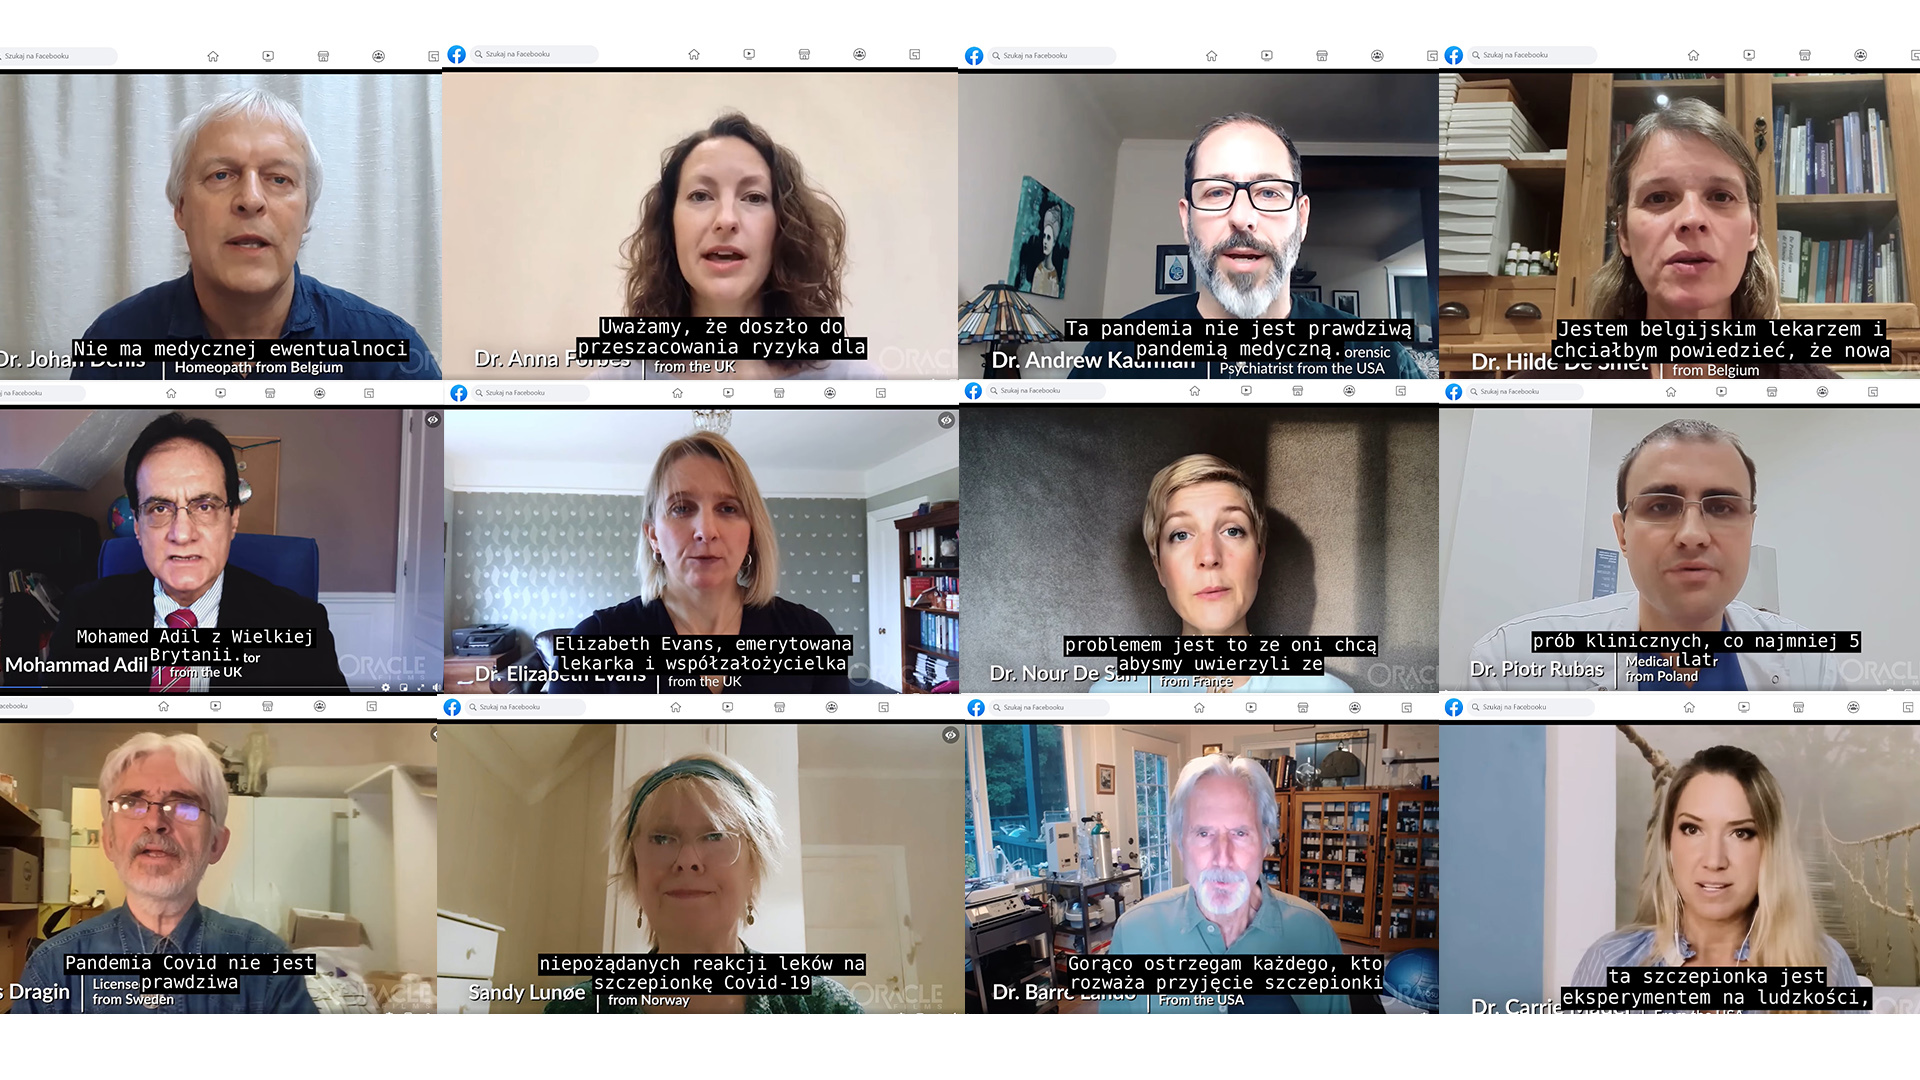 W filmie będącym częścią kampanii World Doctors Alliance swoje opinie prezentują 34 osoby. W większości powtarzają te same fałszywe tezy